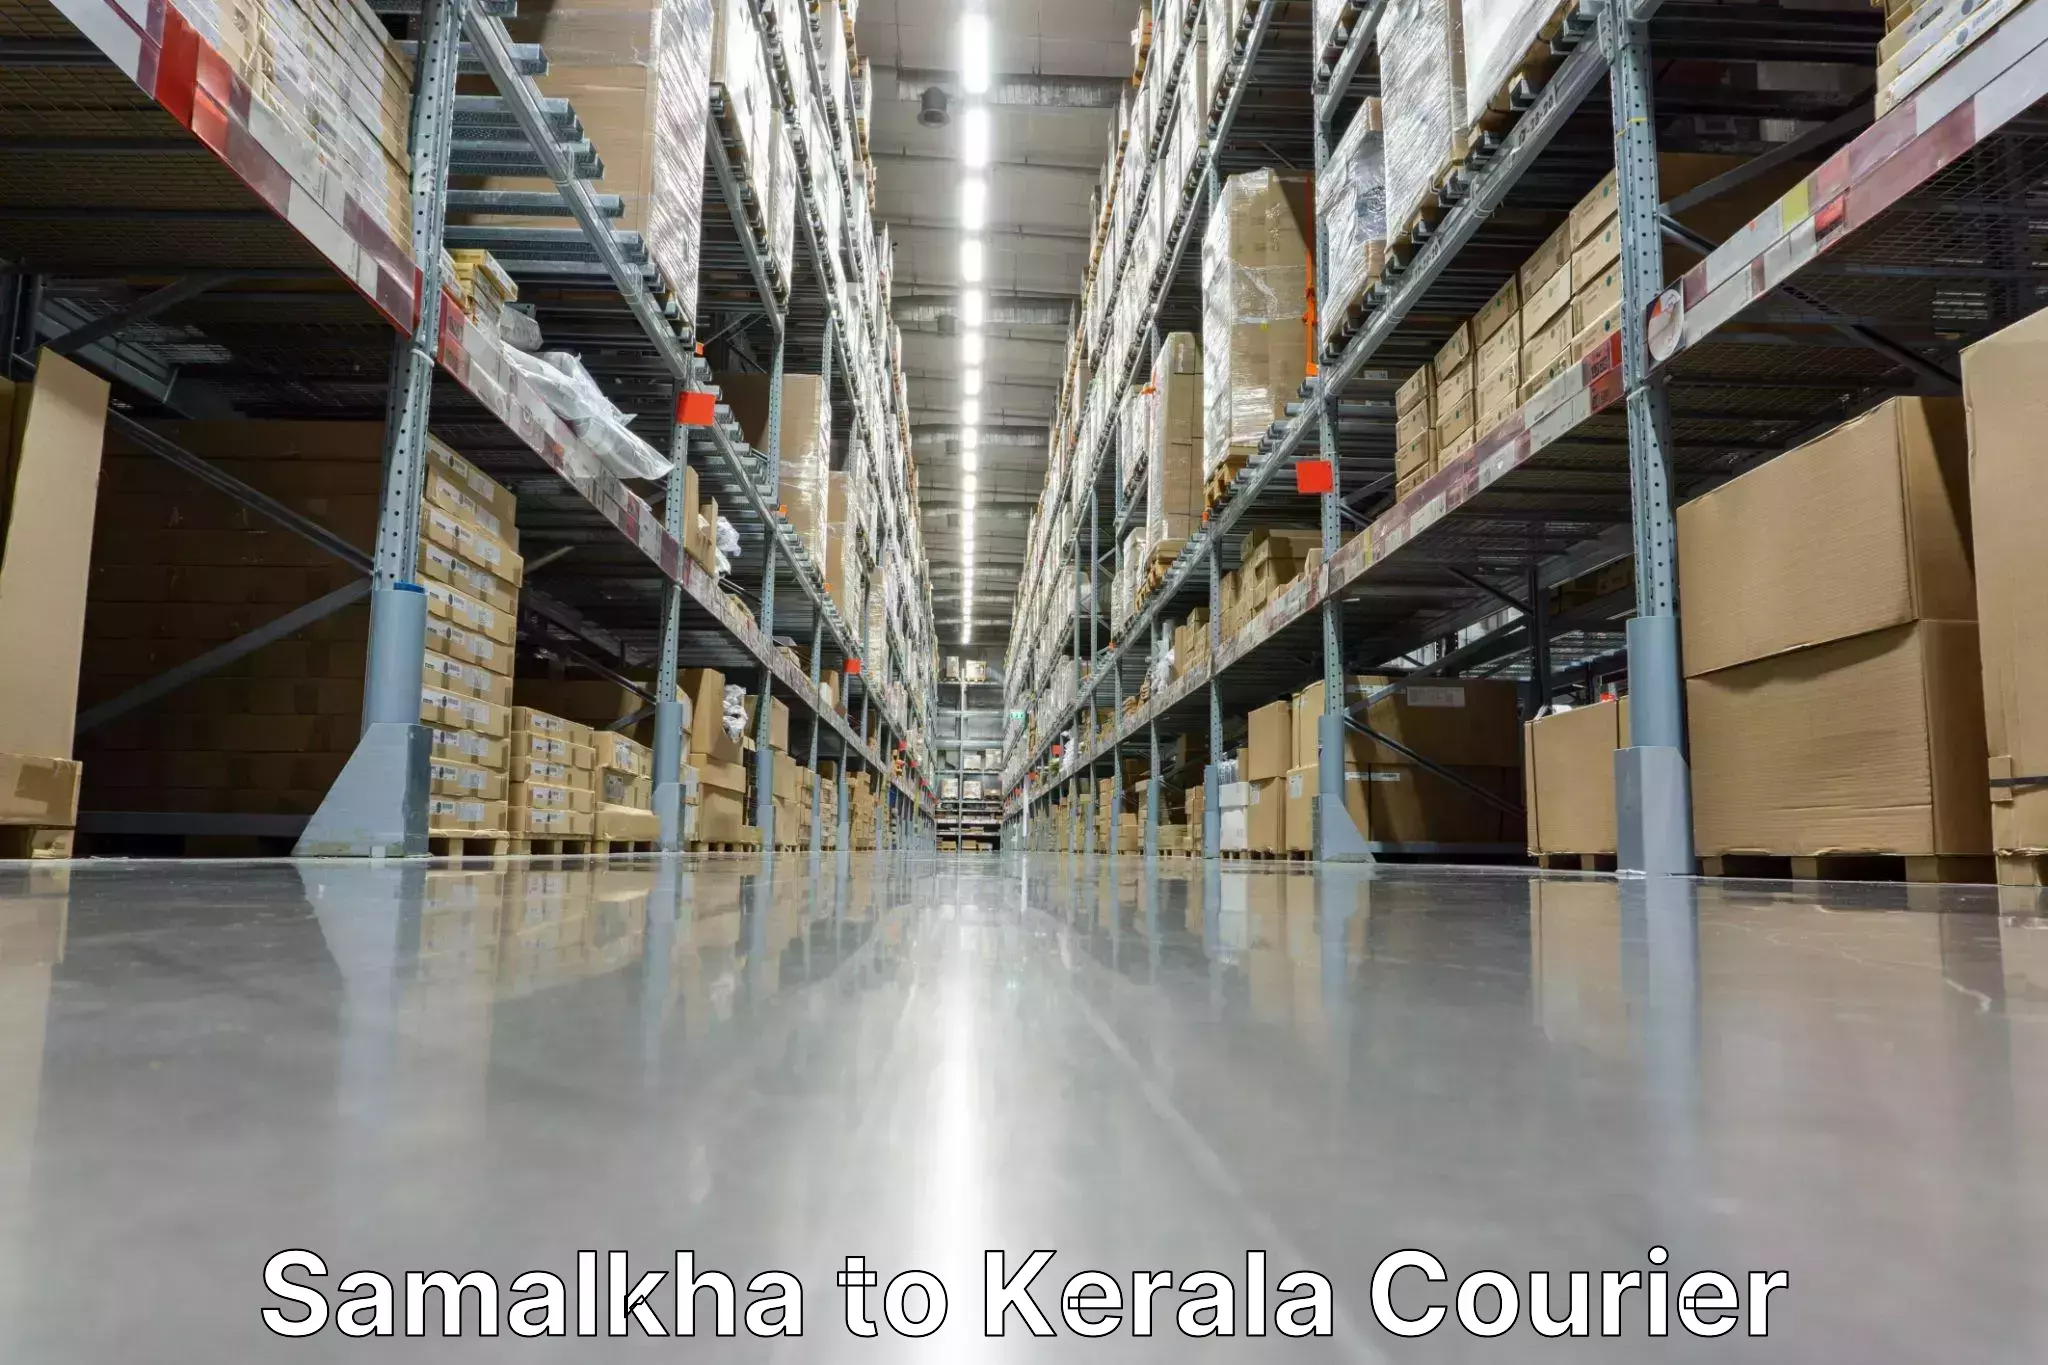 Premium courier services Samalkha to Cochin Port Kochi